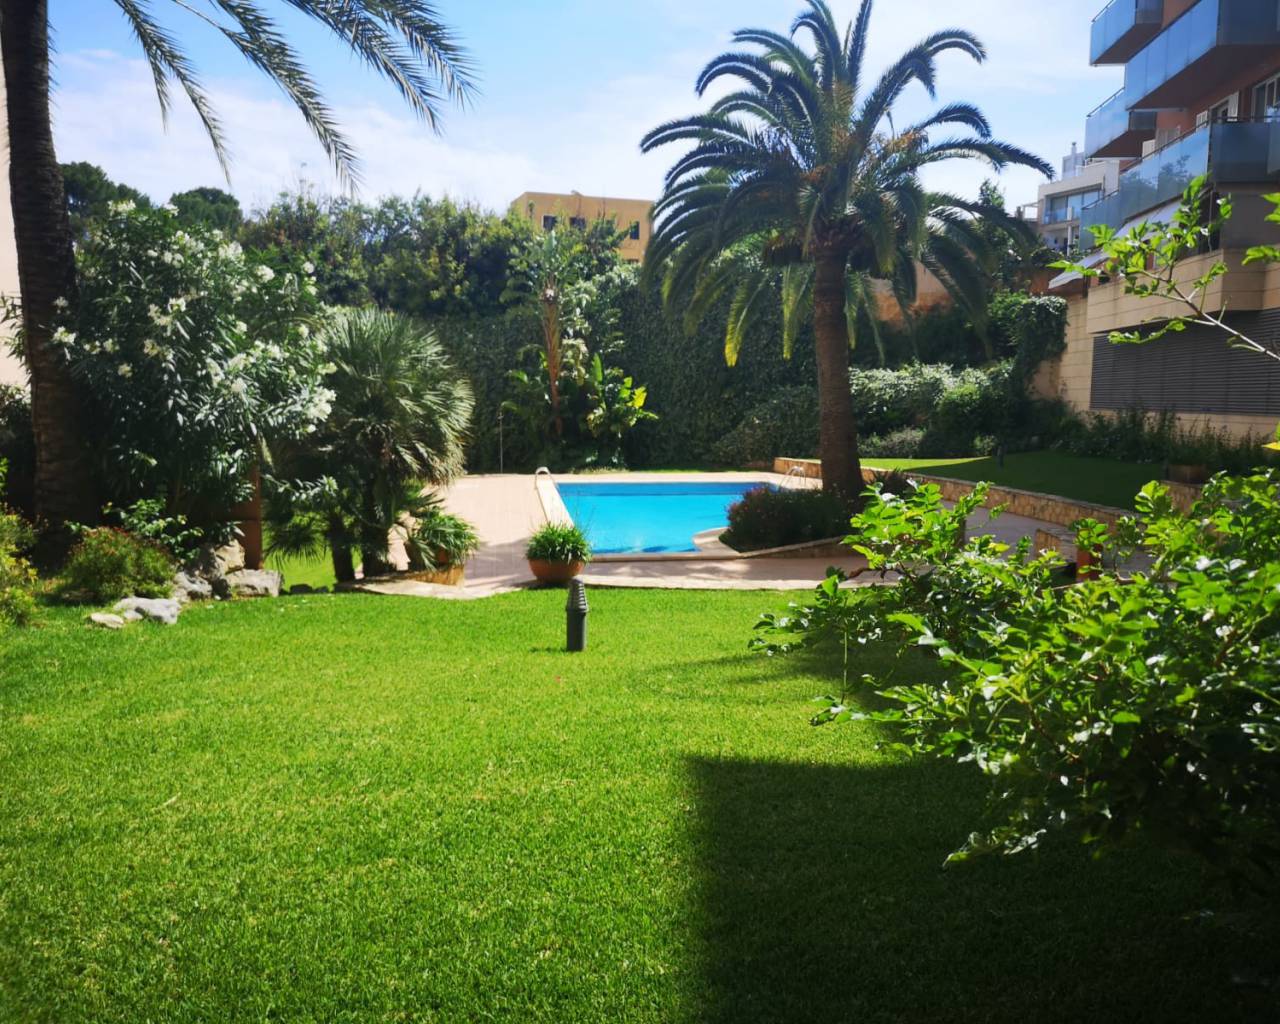 Property for rent in Palma de Mallorca-Mallorca estate agents